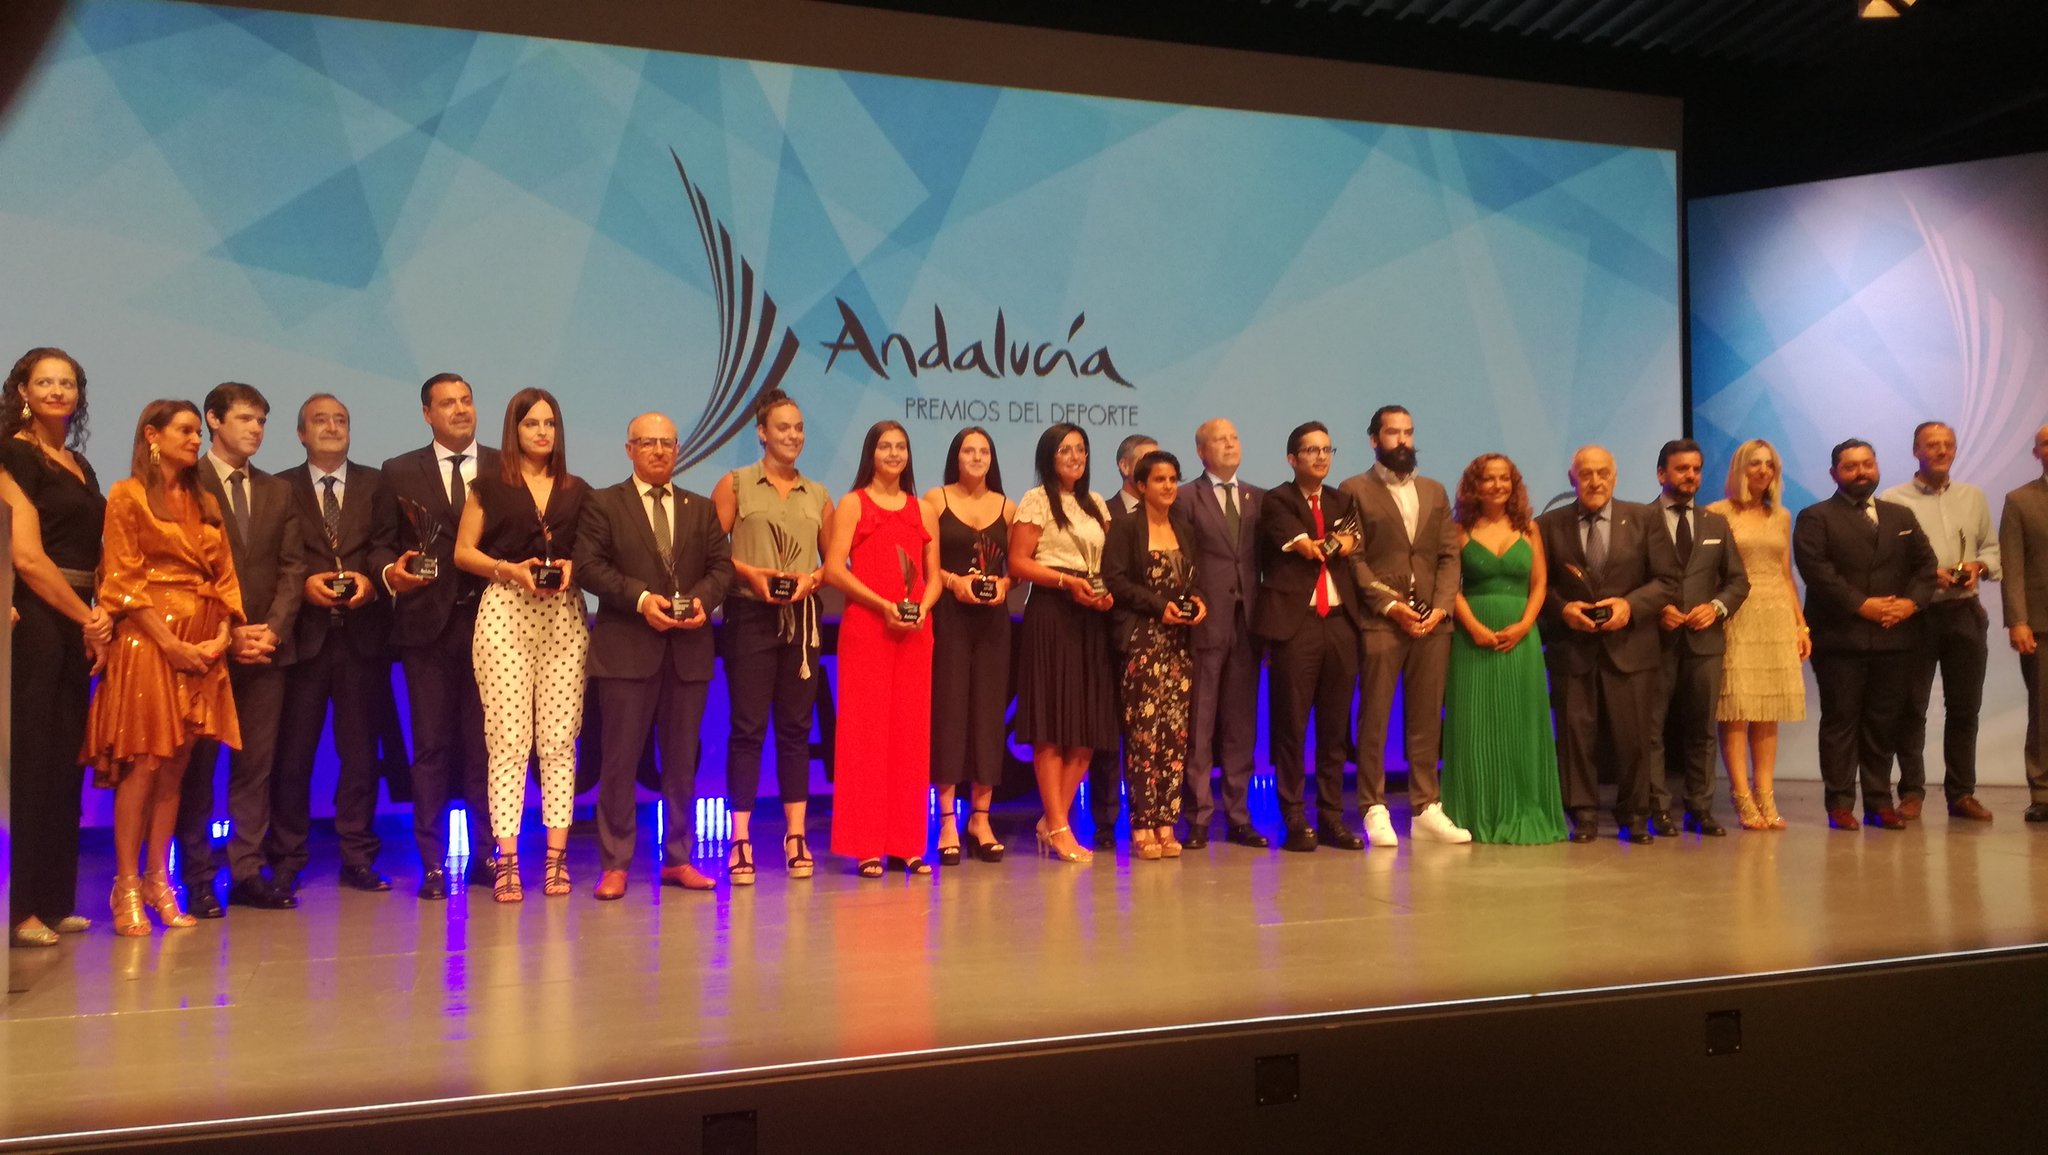 Gala del Deporte de Andalucía 2018